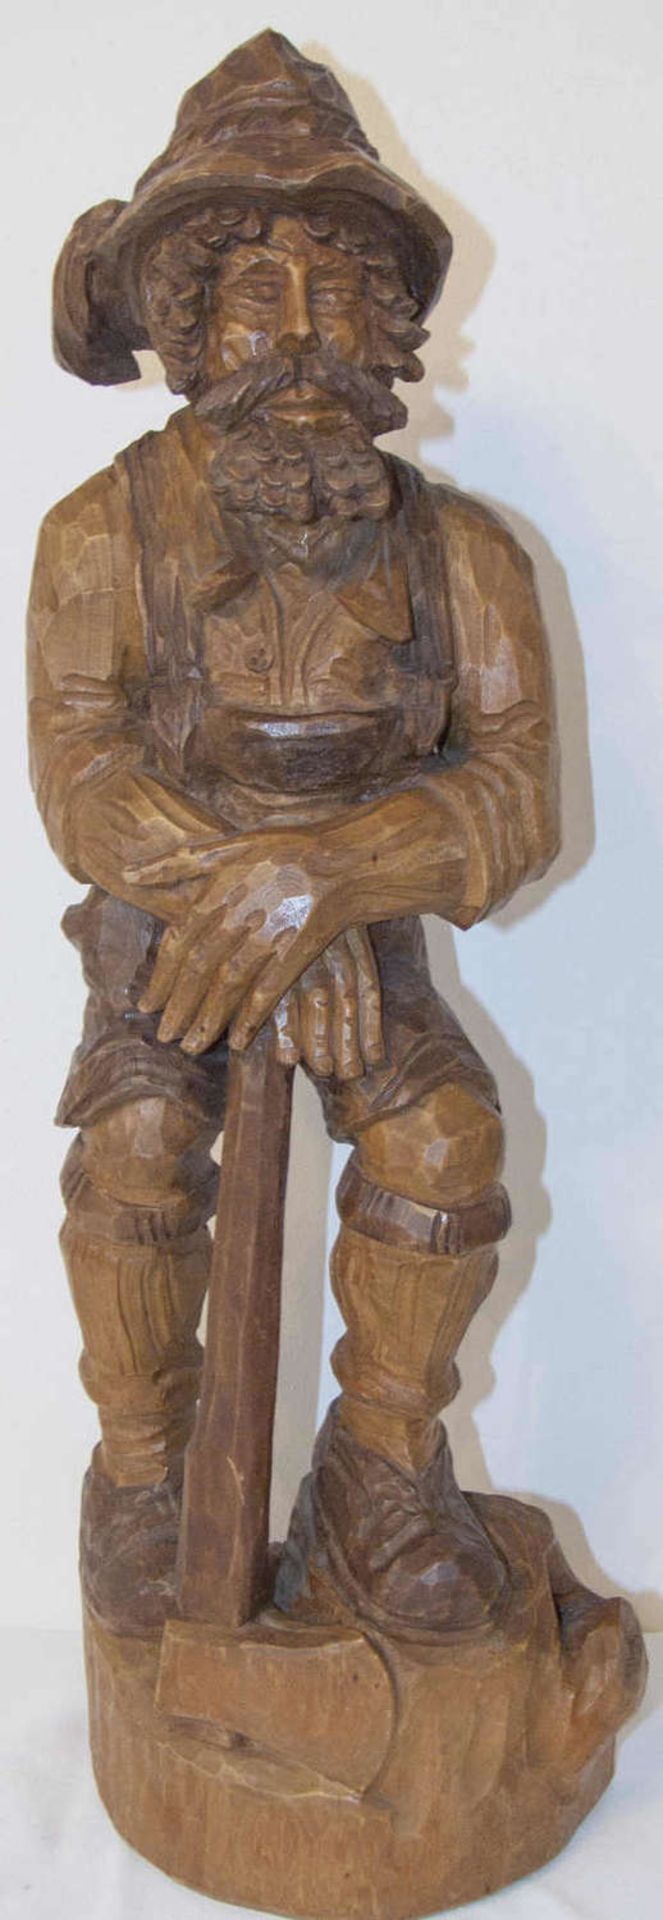 Holz - Figur "Holzfäller". Schön geschnitzt. H: ca. 66 cm. Guter Zustand.Wood figure "Lumberjack".